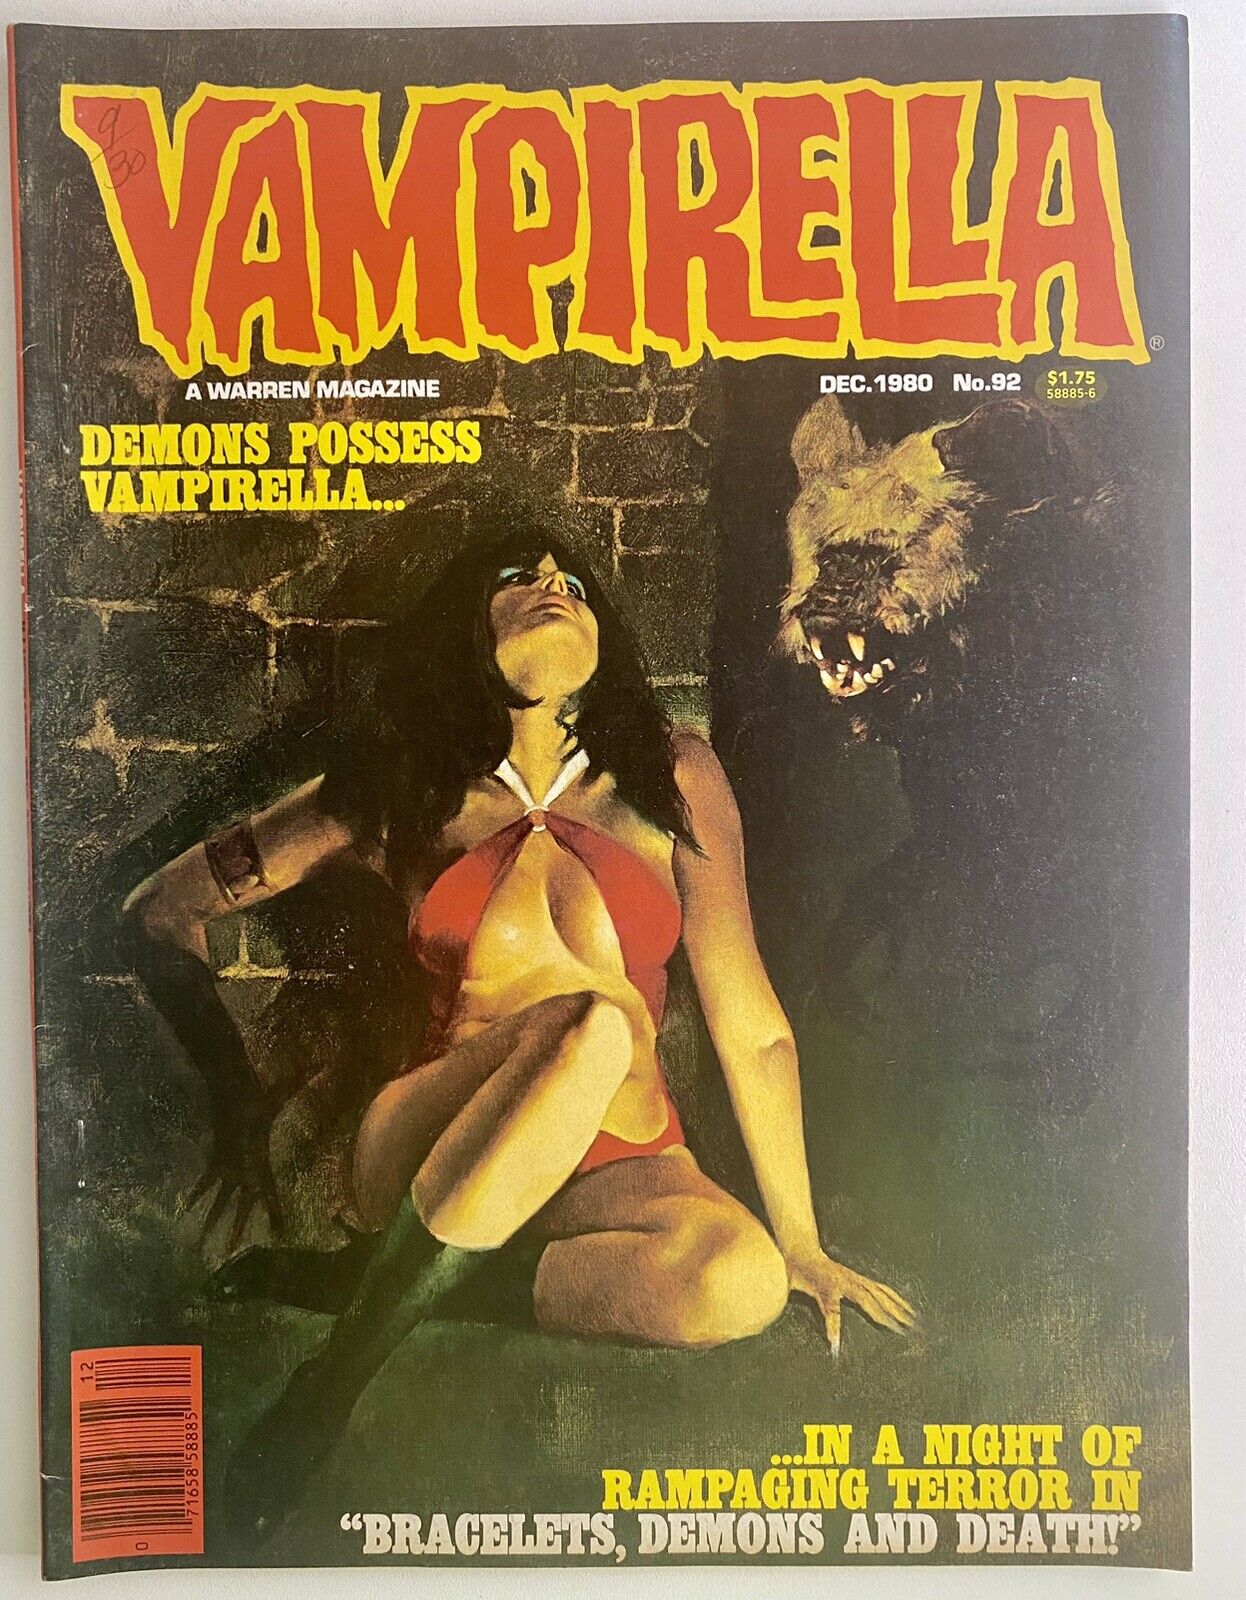 Vampirella #92 (1980) Warren Publishing Magazine - Vampi Horror